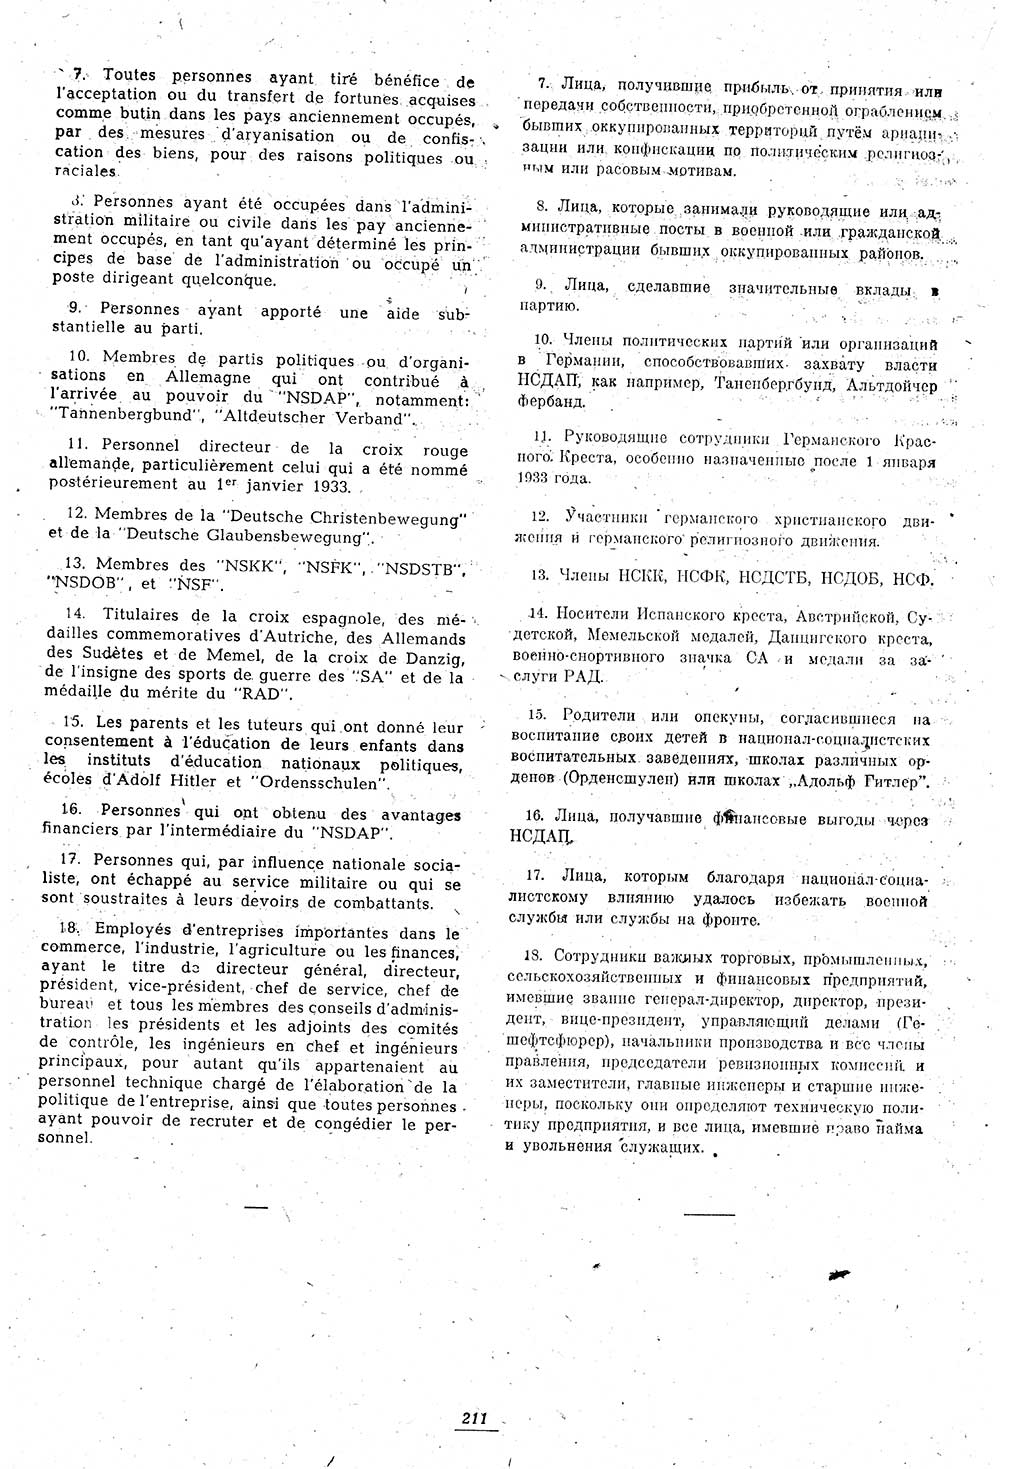 Amtsblatt des Kontrollrats (ABlKR) in Deutschland 1946, Seite 211/1 (ABlKR Dtl. 1946, S. 211/1)